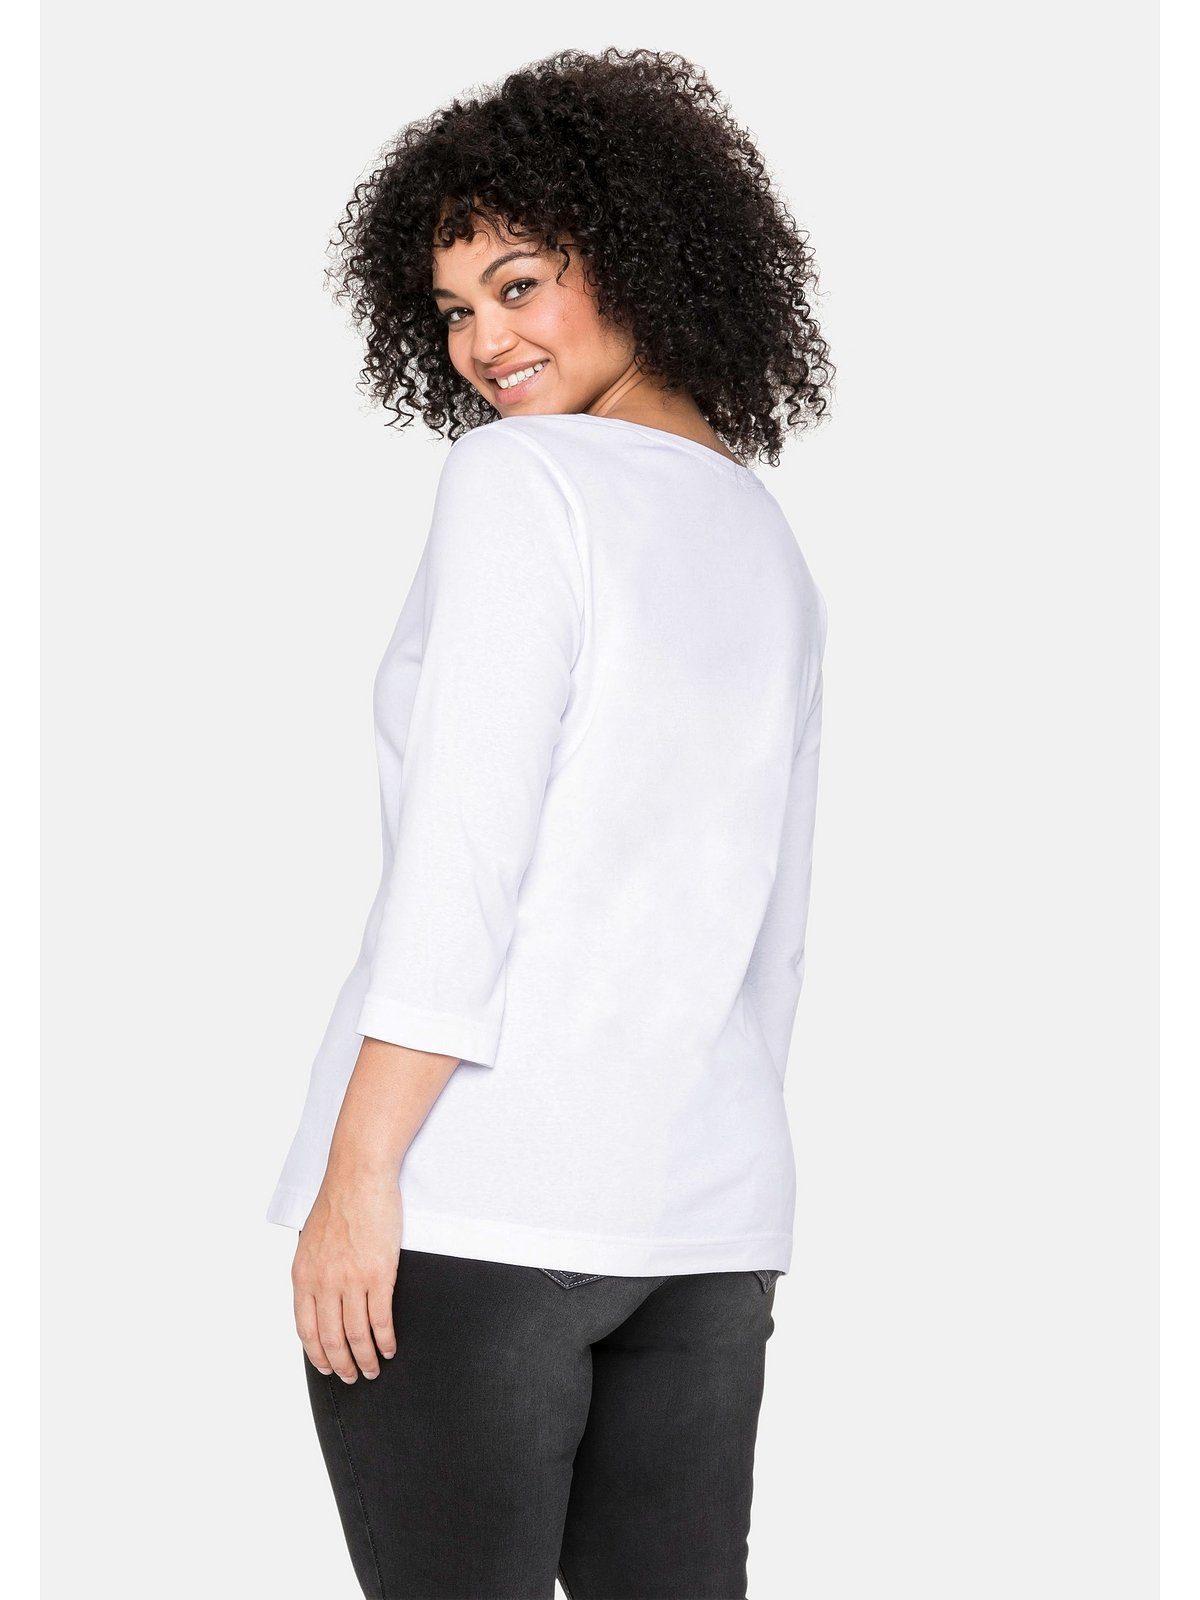 Baumwolle weiß 3/4-Arm-Shirt reiner Große Sheego Größen aus